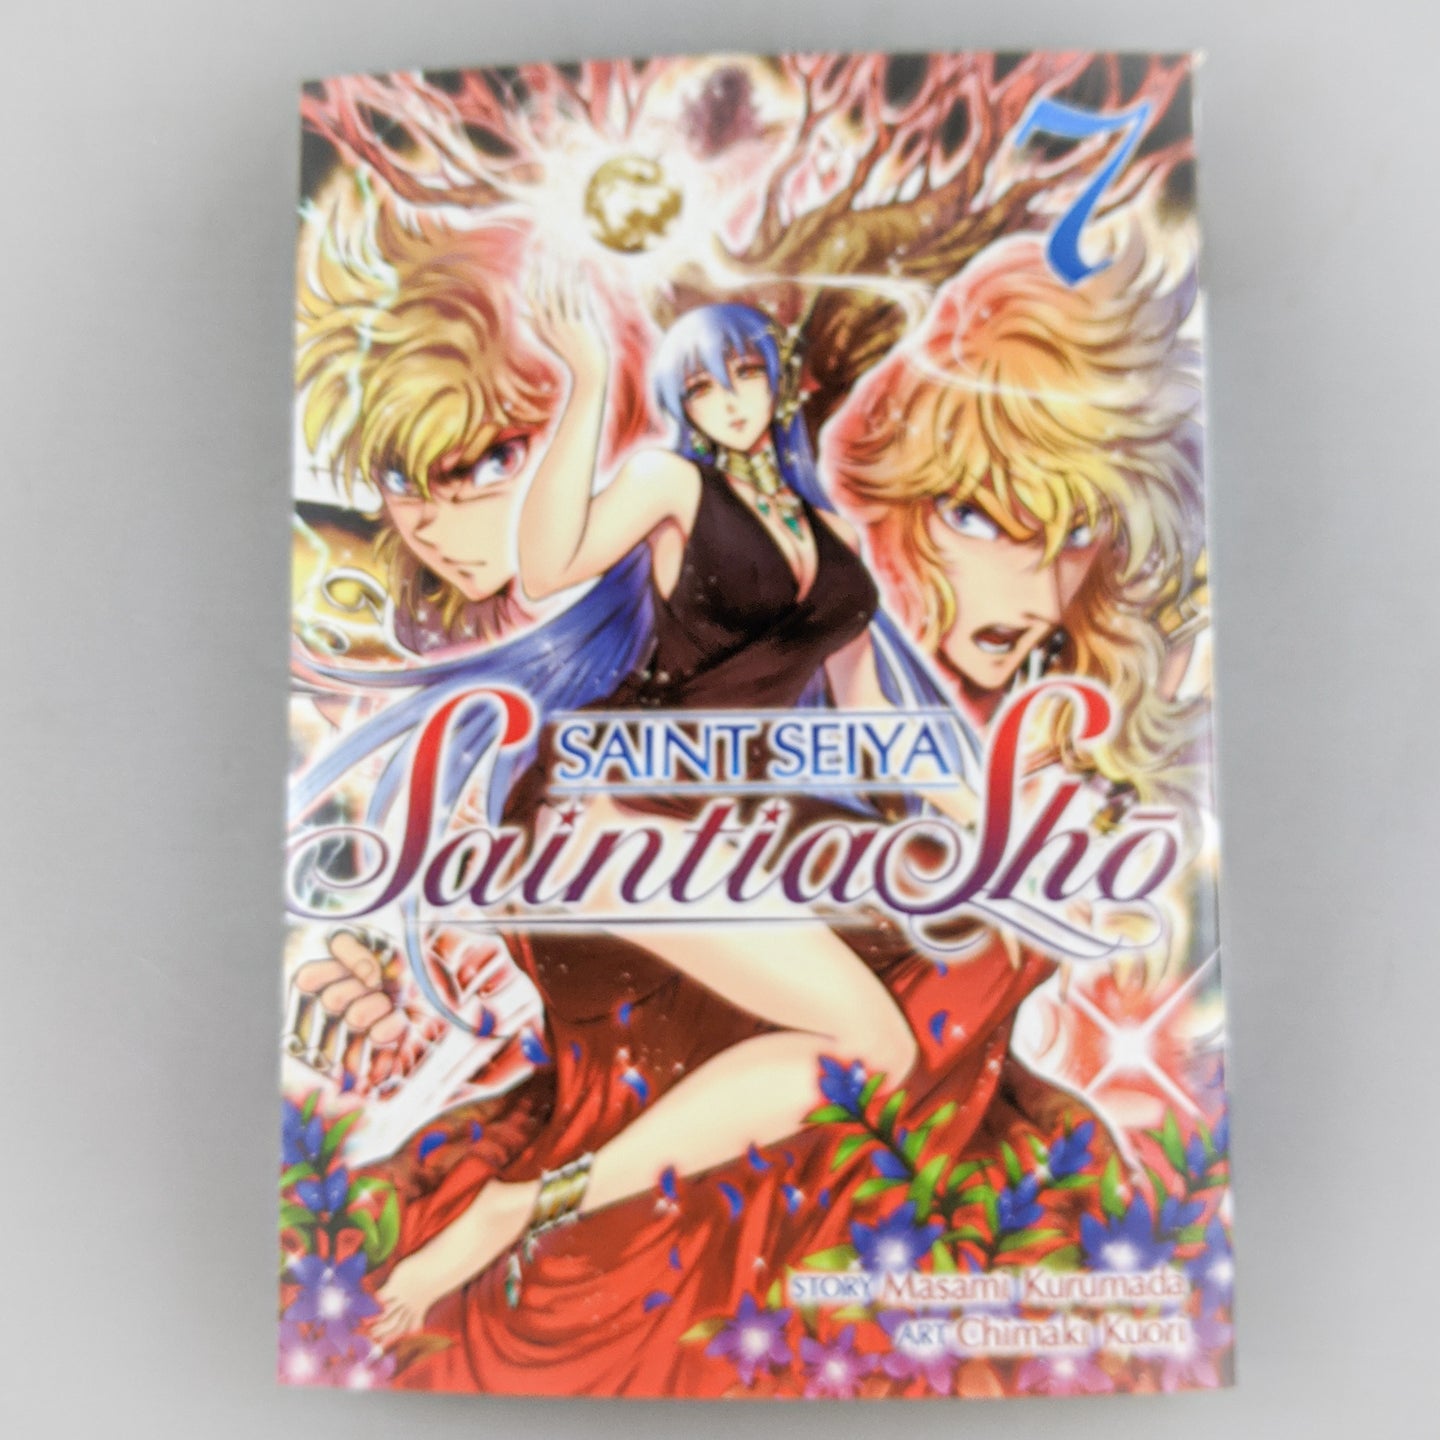 Saint Seiya: Saintia Sho Manga volume 7.